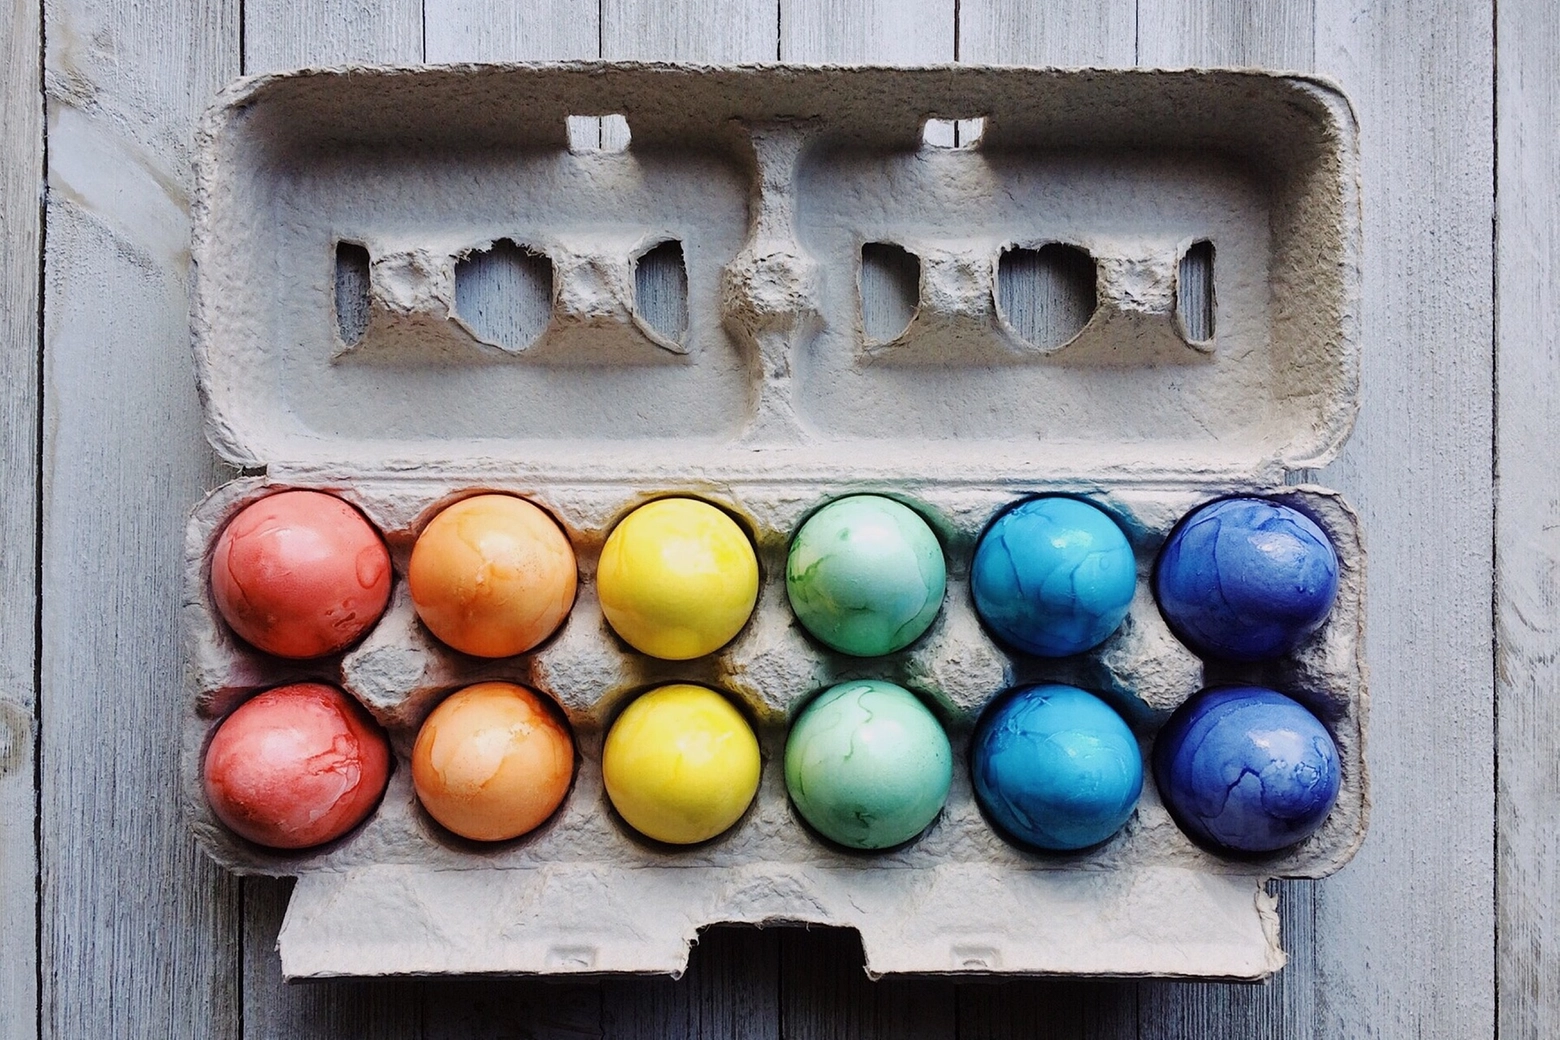 Le uova possono essere tranquillamente mangiate se colorate con pigmenti naturali di verdure o spezie